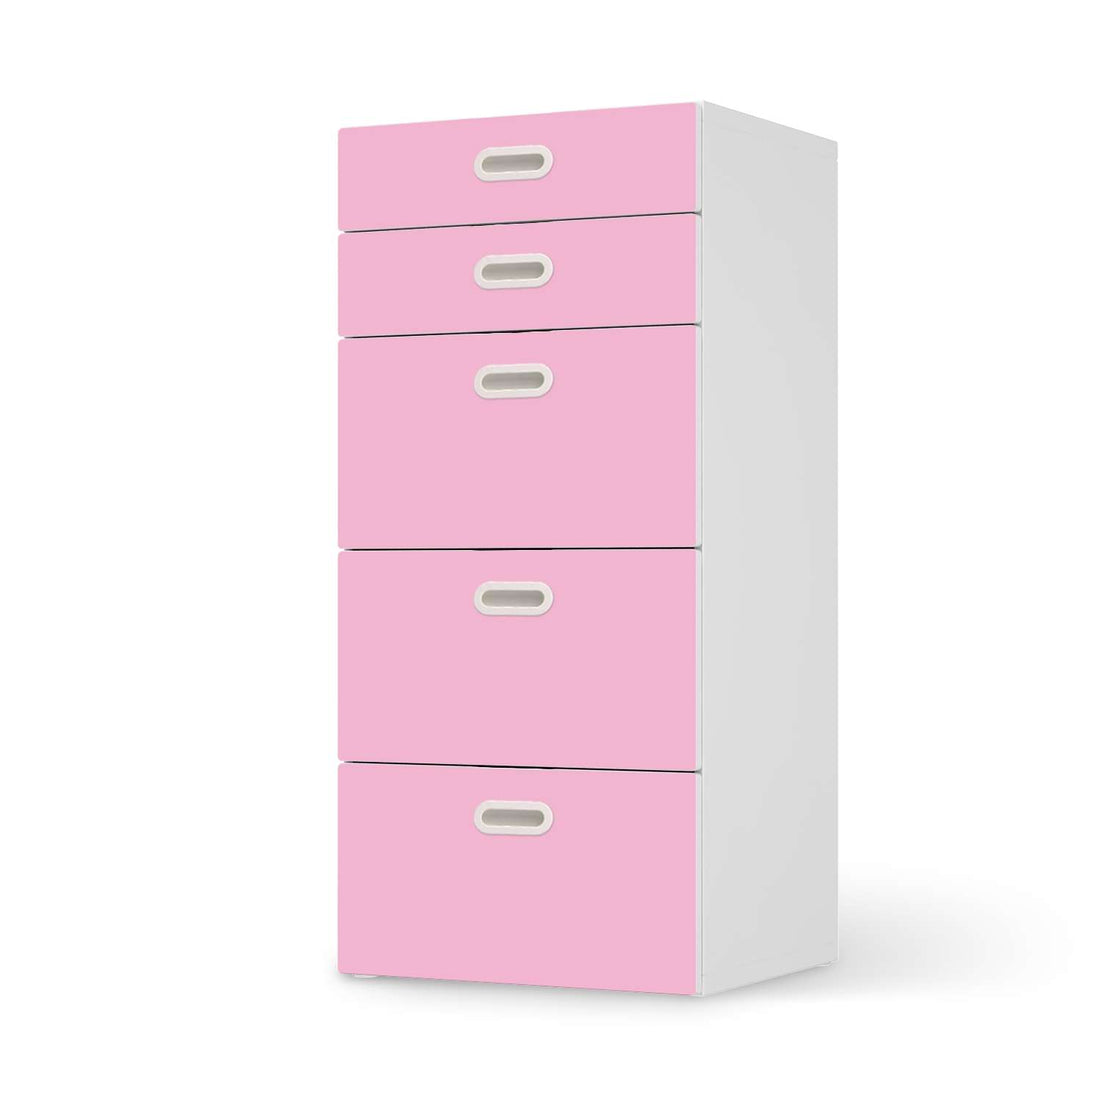 Möbel Klebefolie Pink Light - IKEA Stuva / Fritids Kommode - 5 Schubladen  - weiss